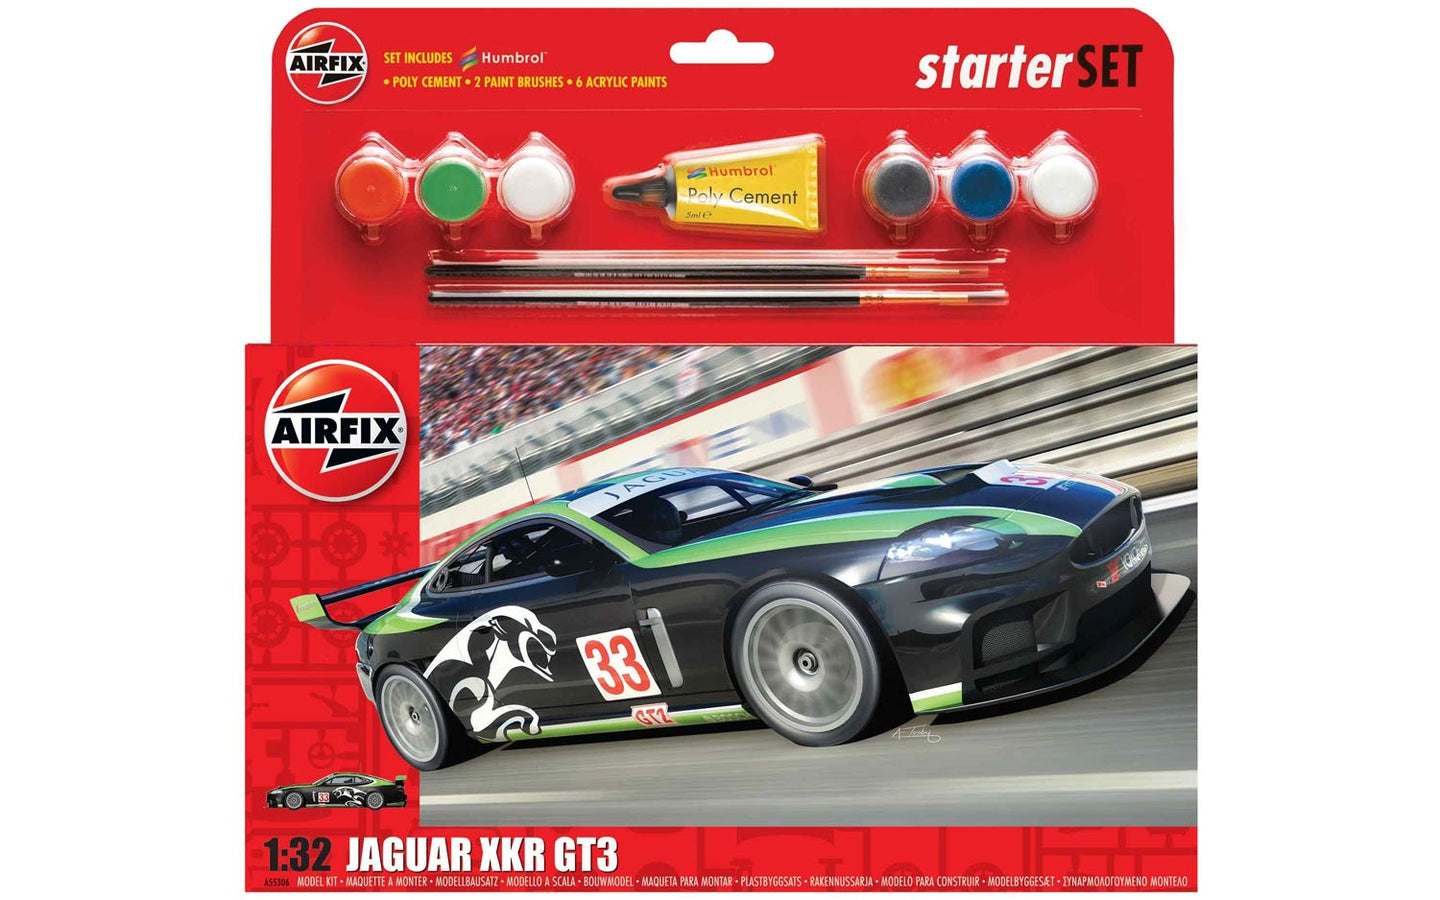 Airfix Starter Set 1/32 Jaguar XKR GT3 A55306